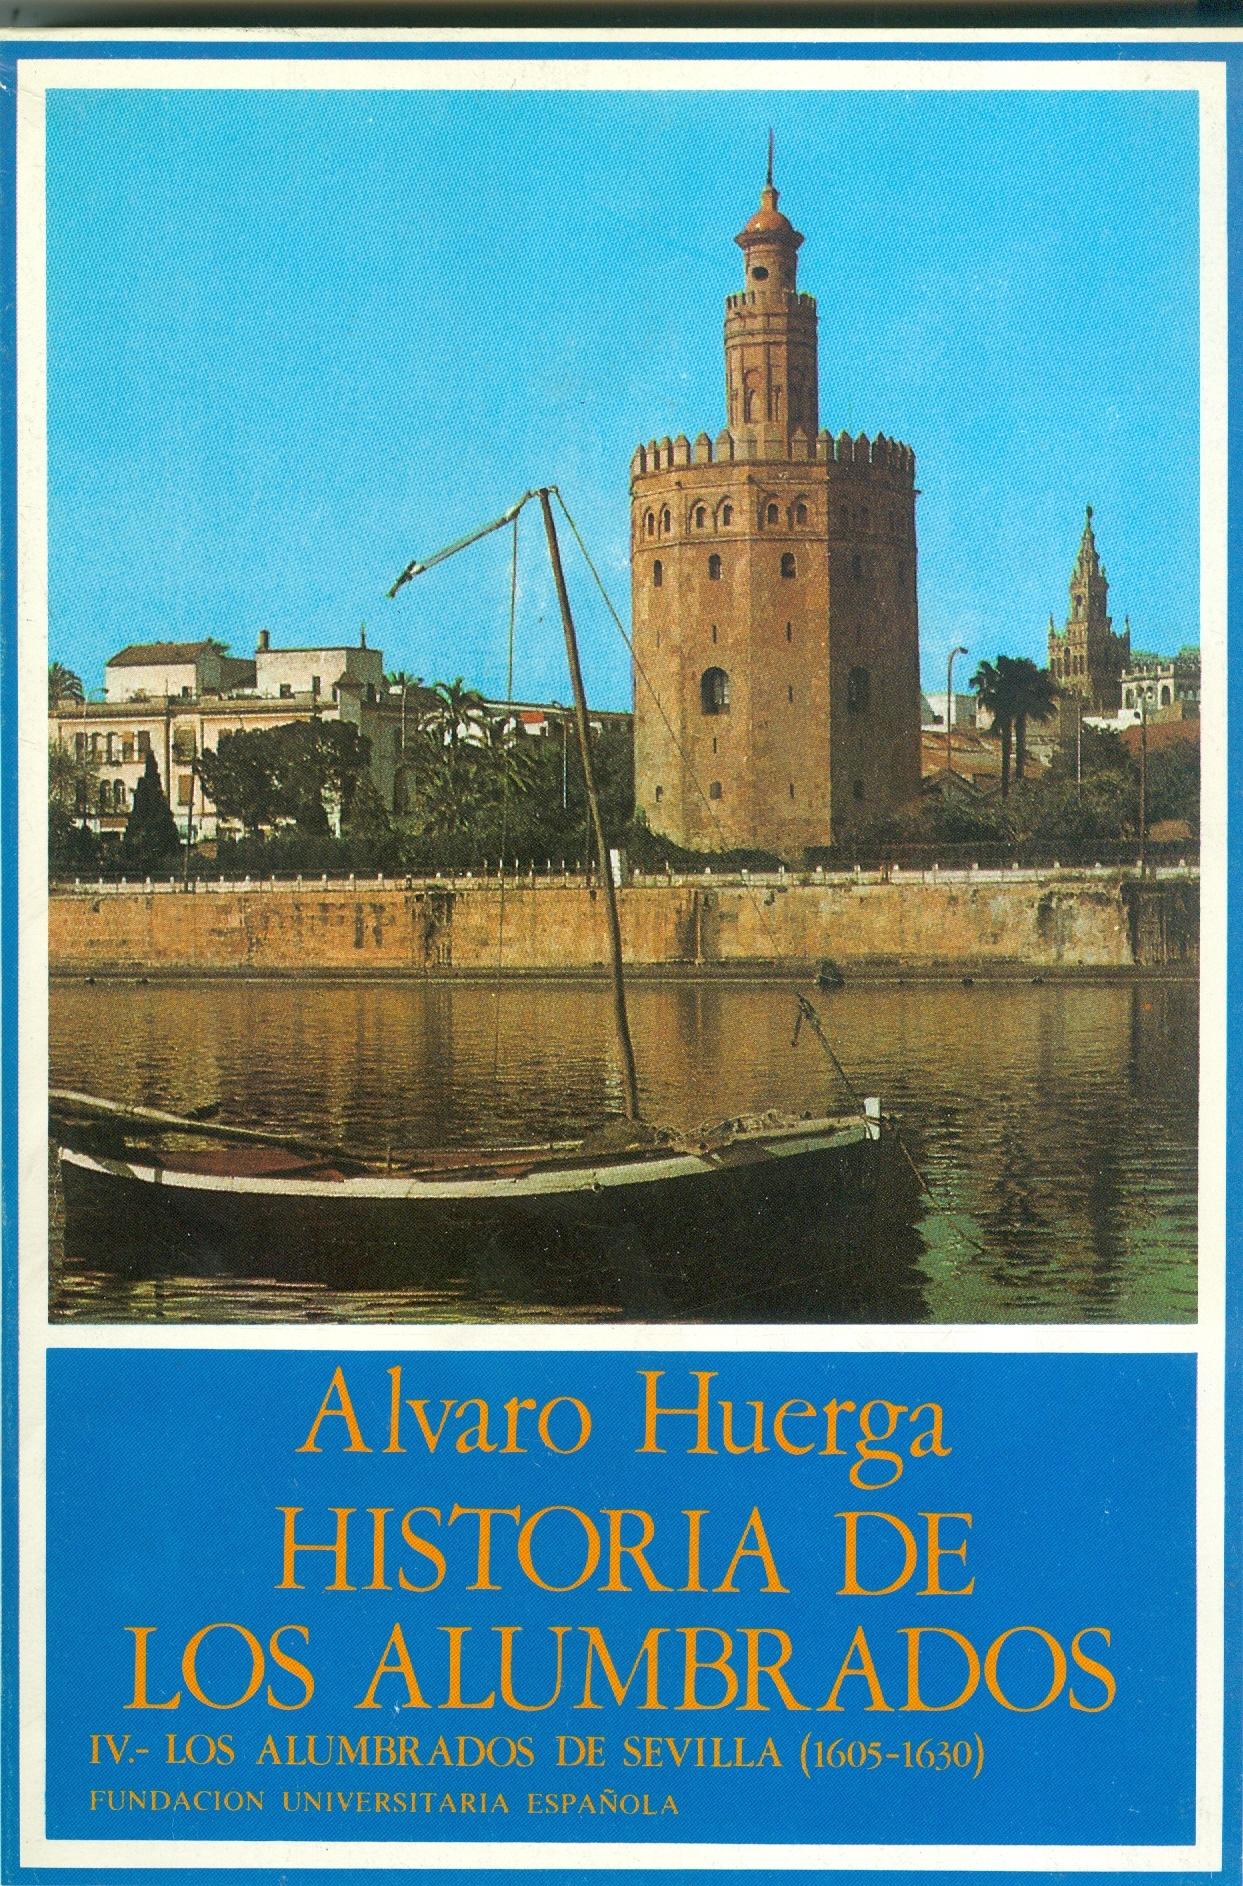 Historia de los alumbrados - IV: Los alumbrados de Sevilla (1605-1630)